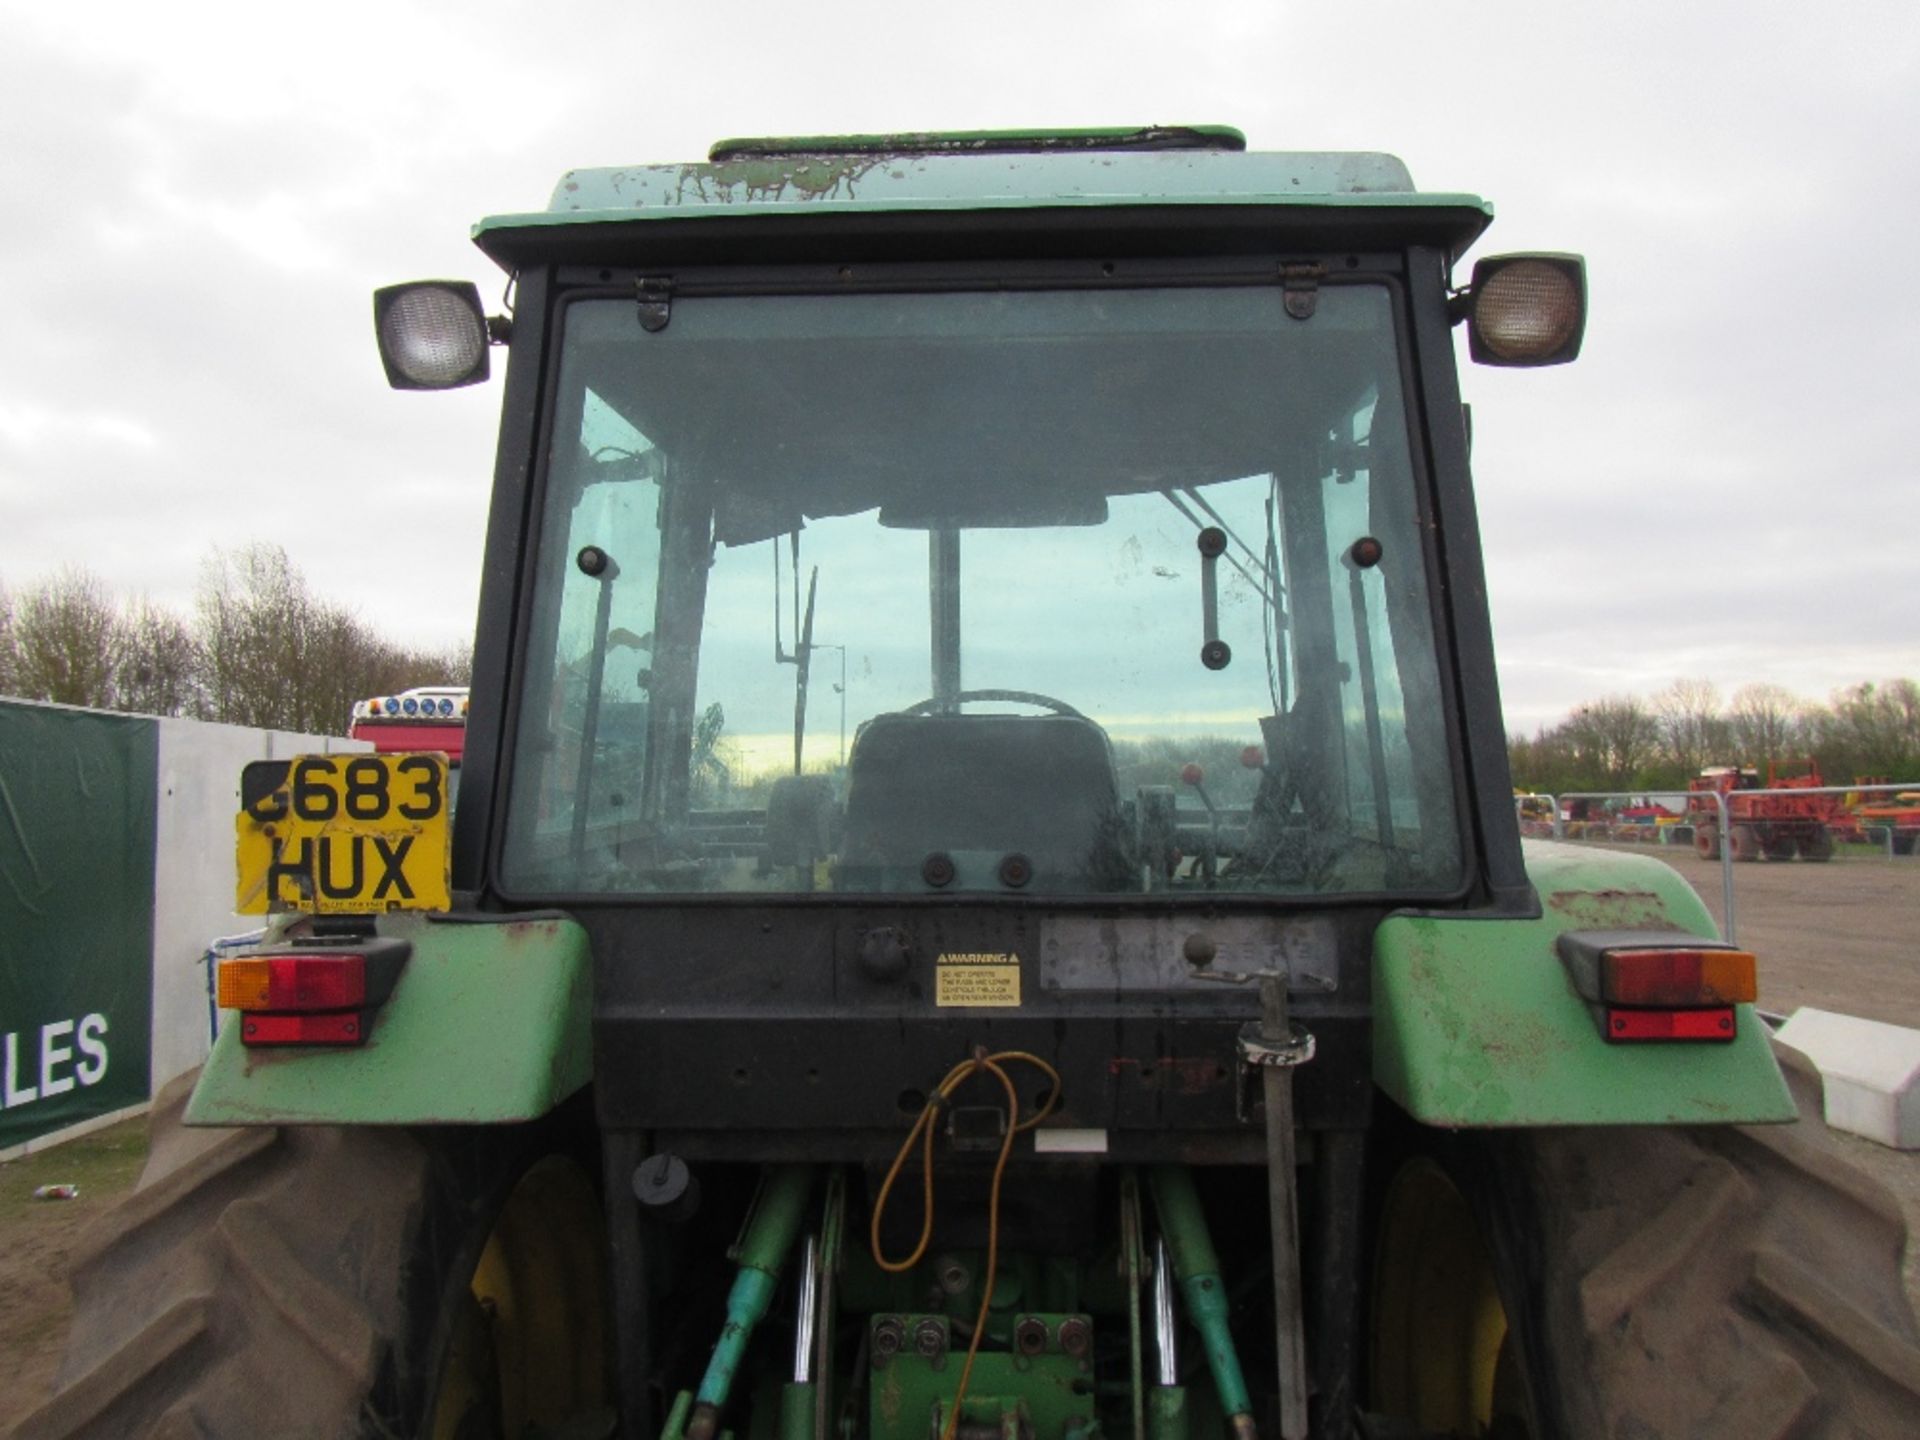 John Deere 3050 4wd Tractor c/w Hi Lift Reg. No. G683 HUX Ser. No. 682146 - Image 8 of 16